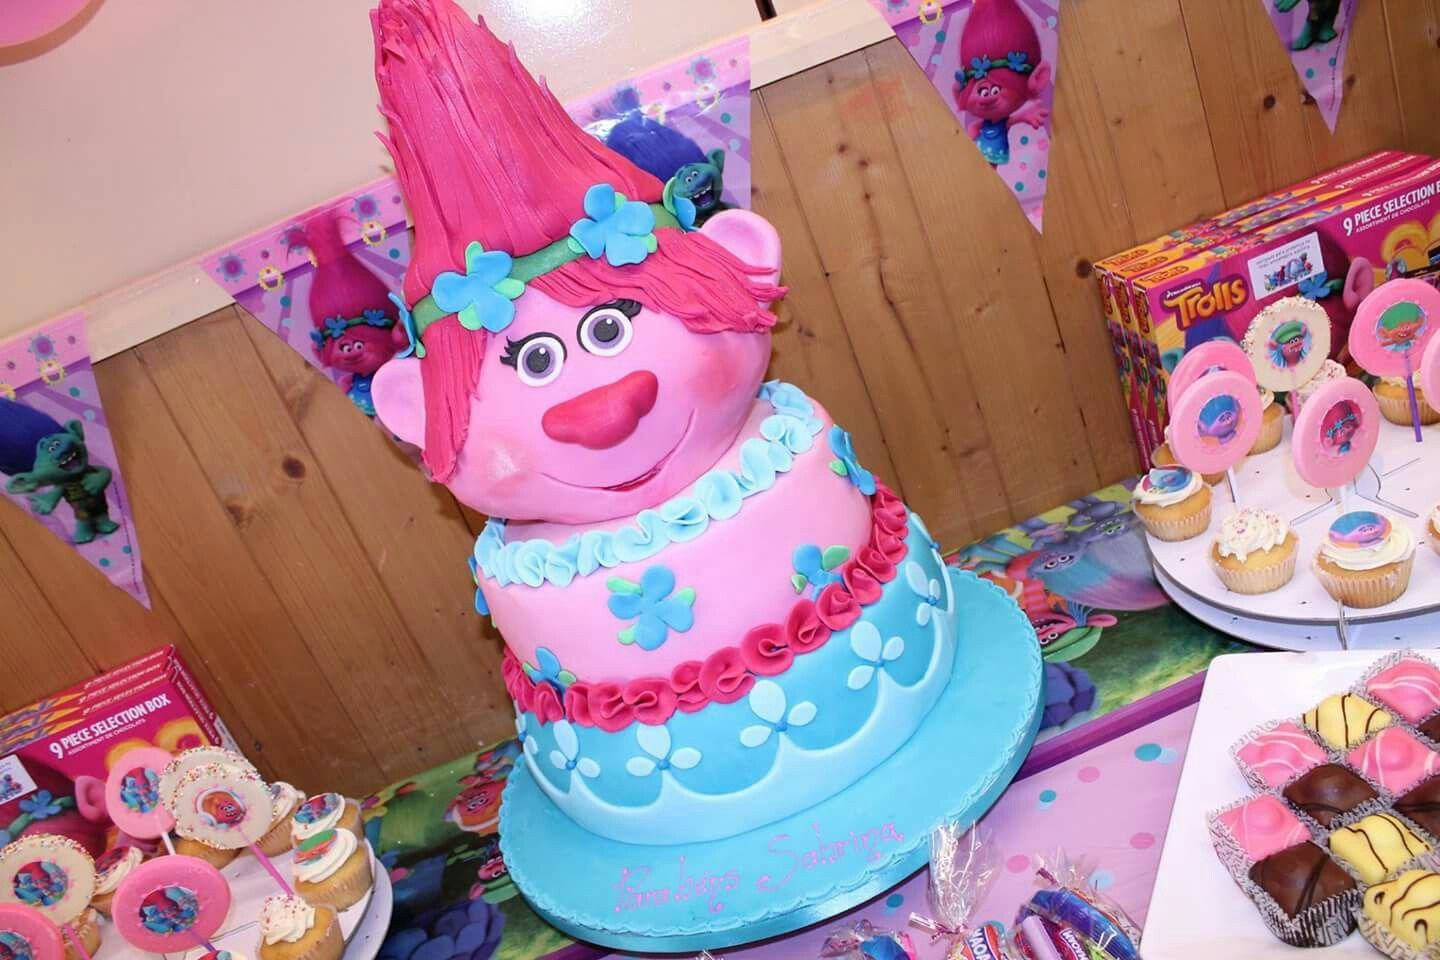 Poppy Troll Party Ideas
 Poppy trolls birthday cake